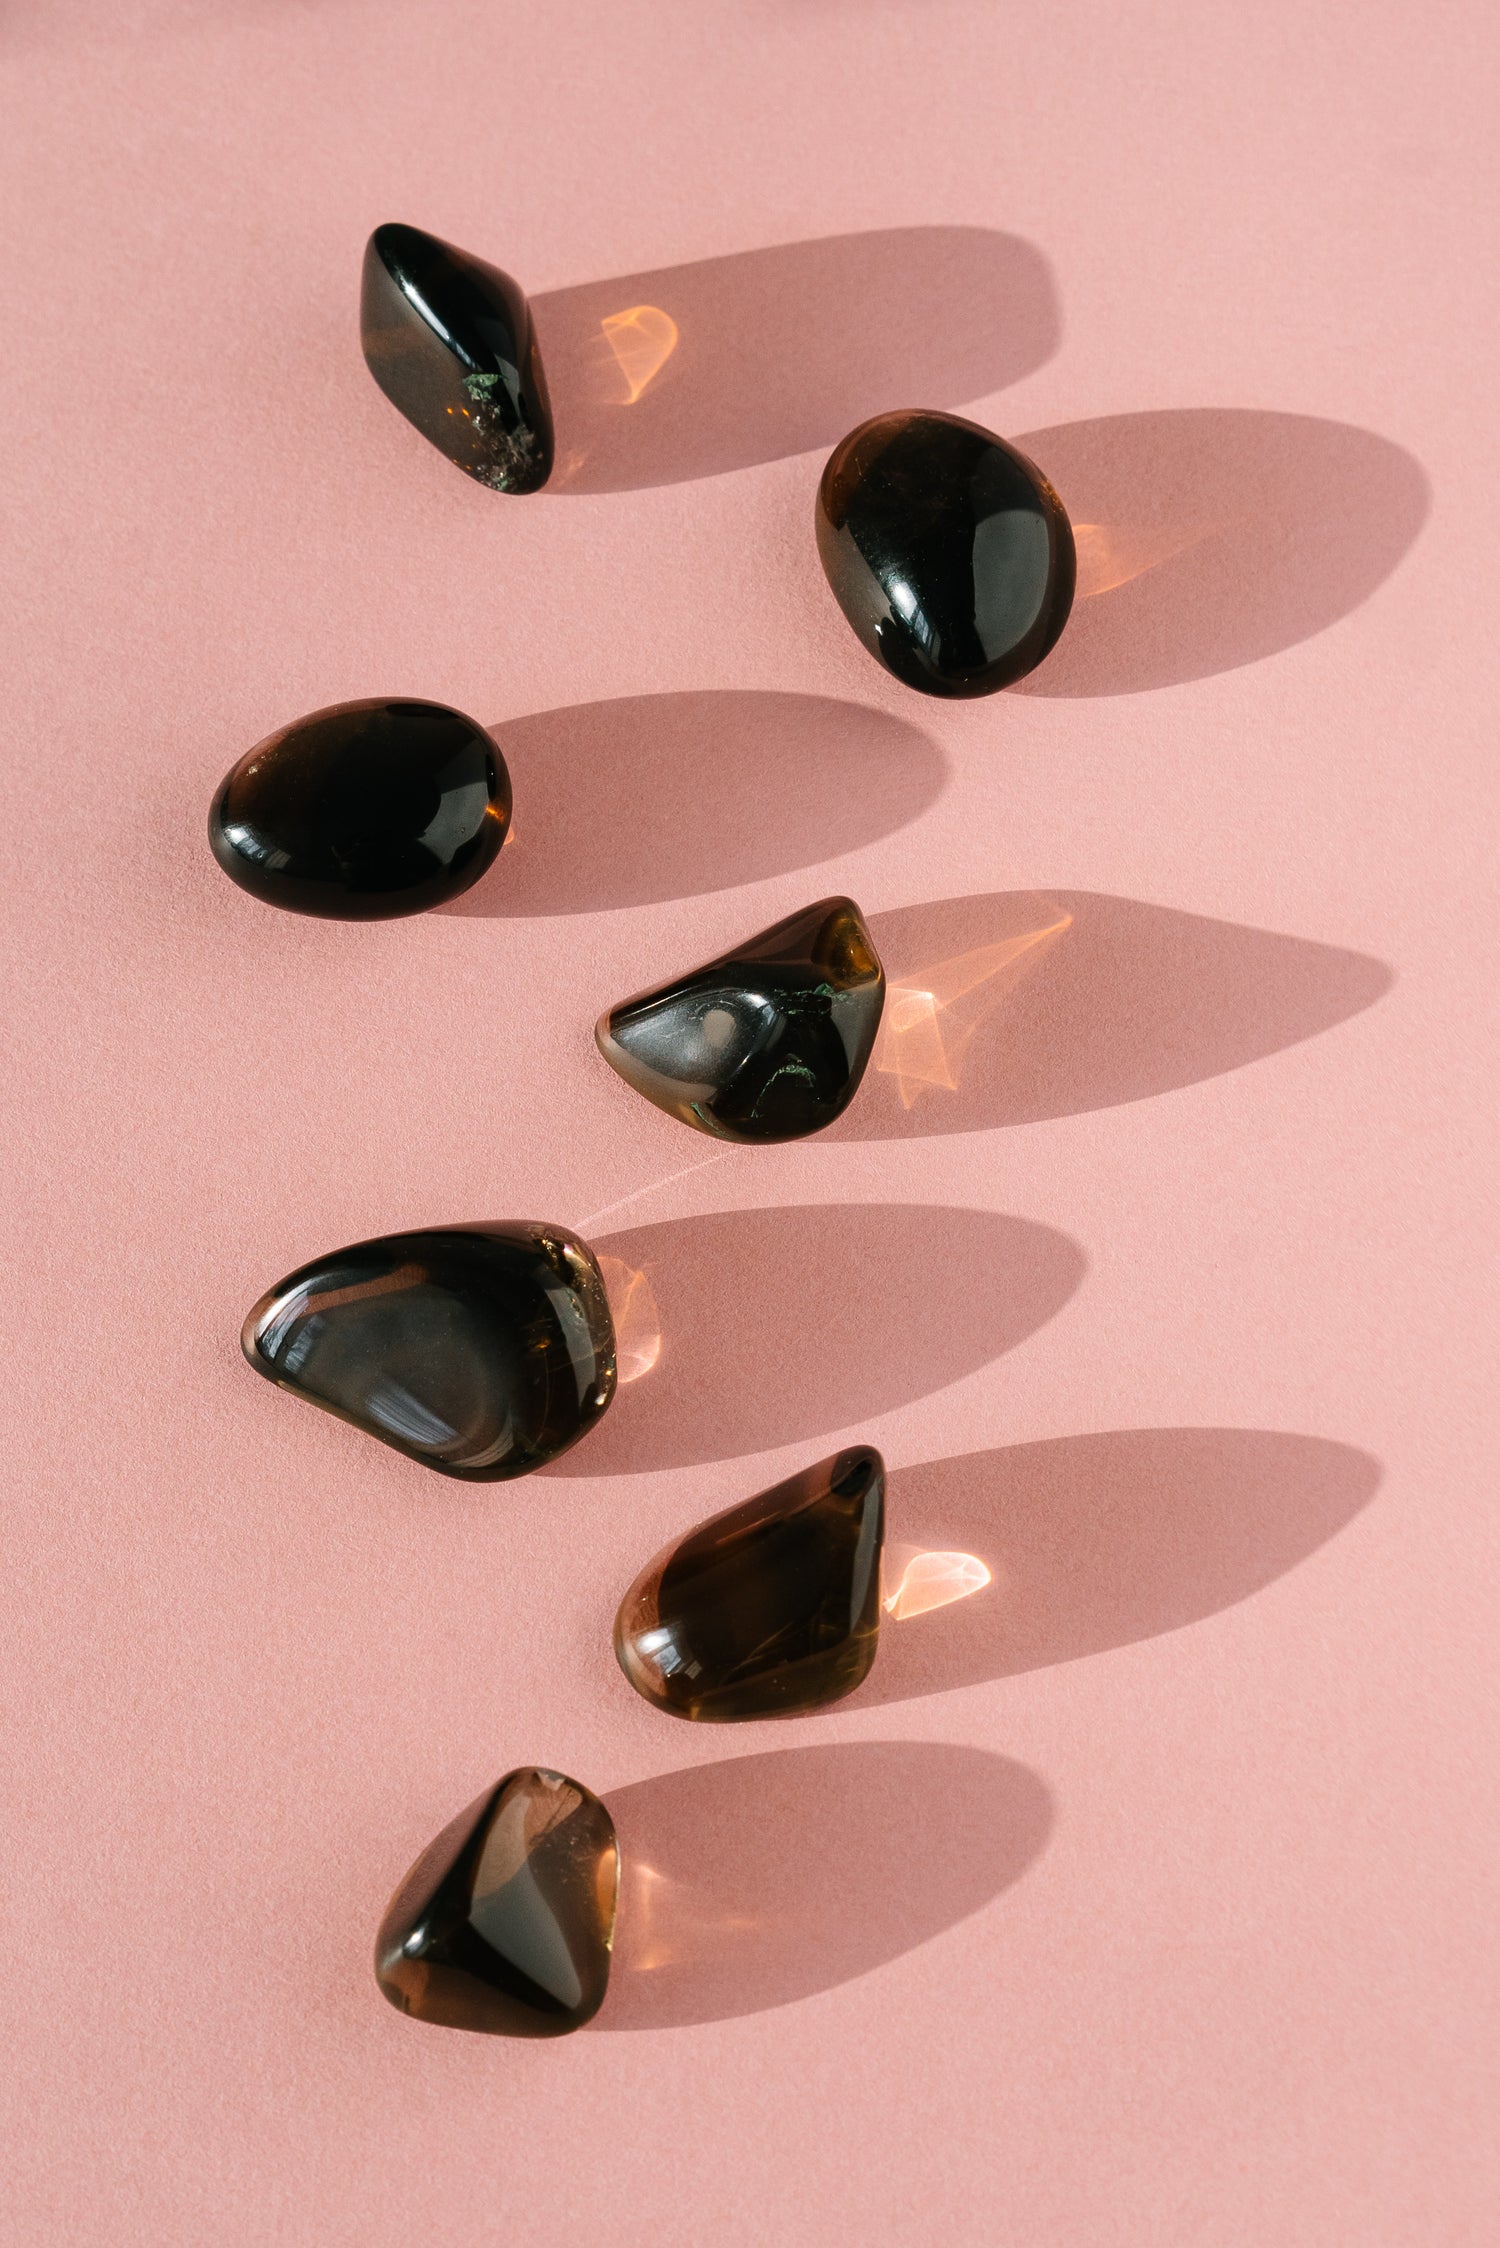 Polished black-coloured gemstones